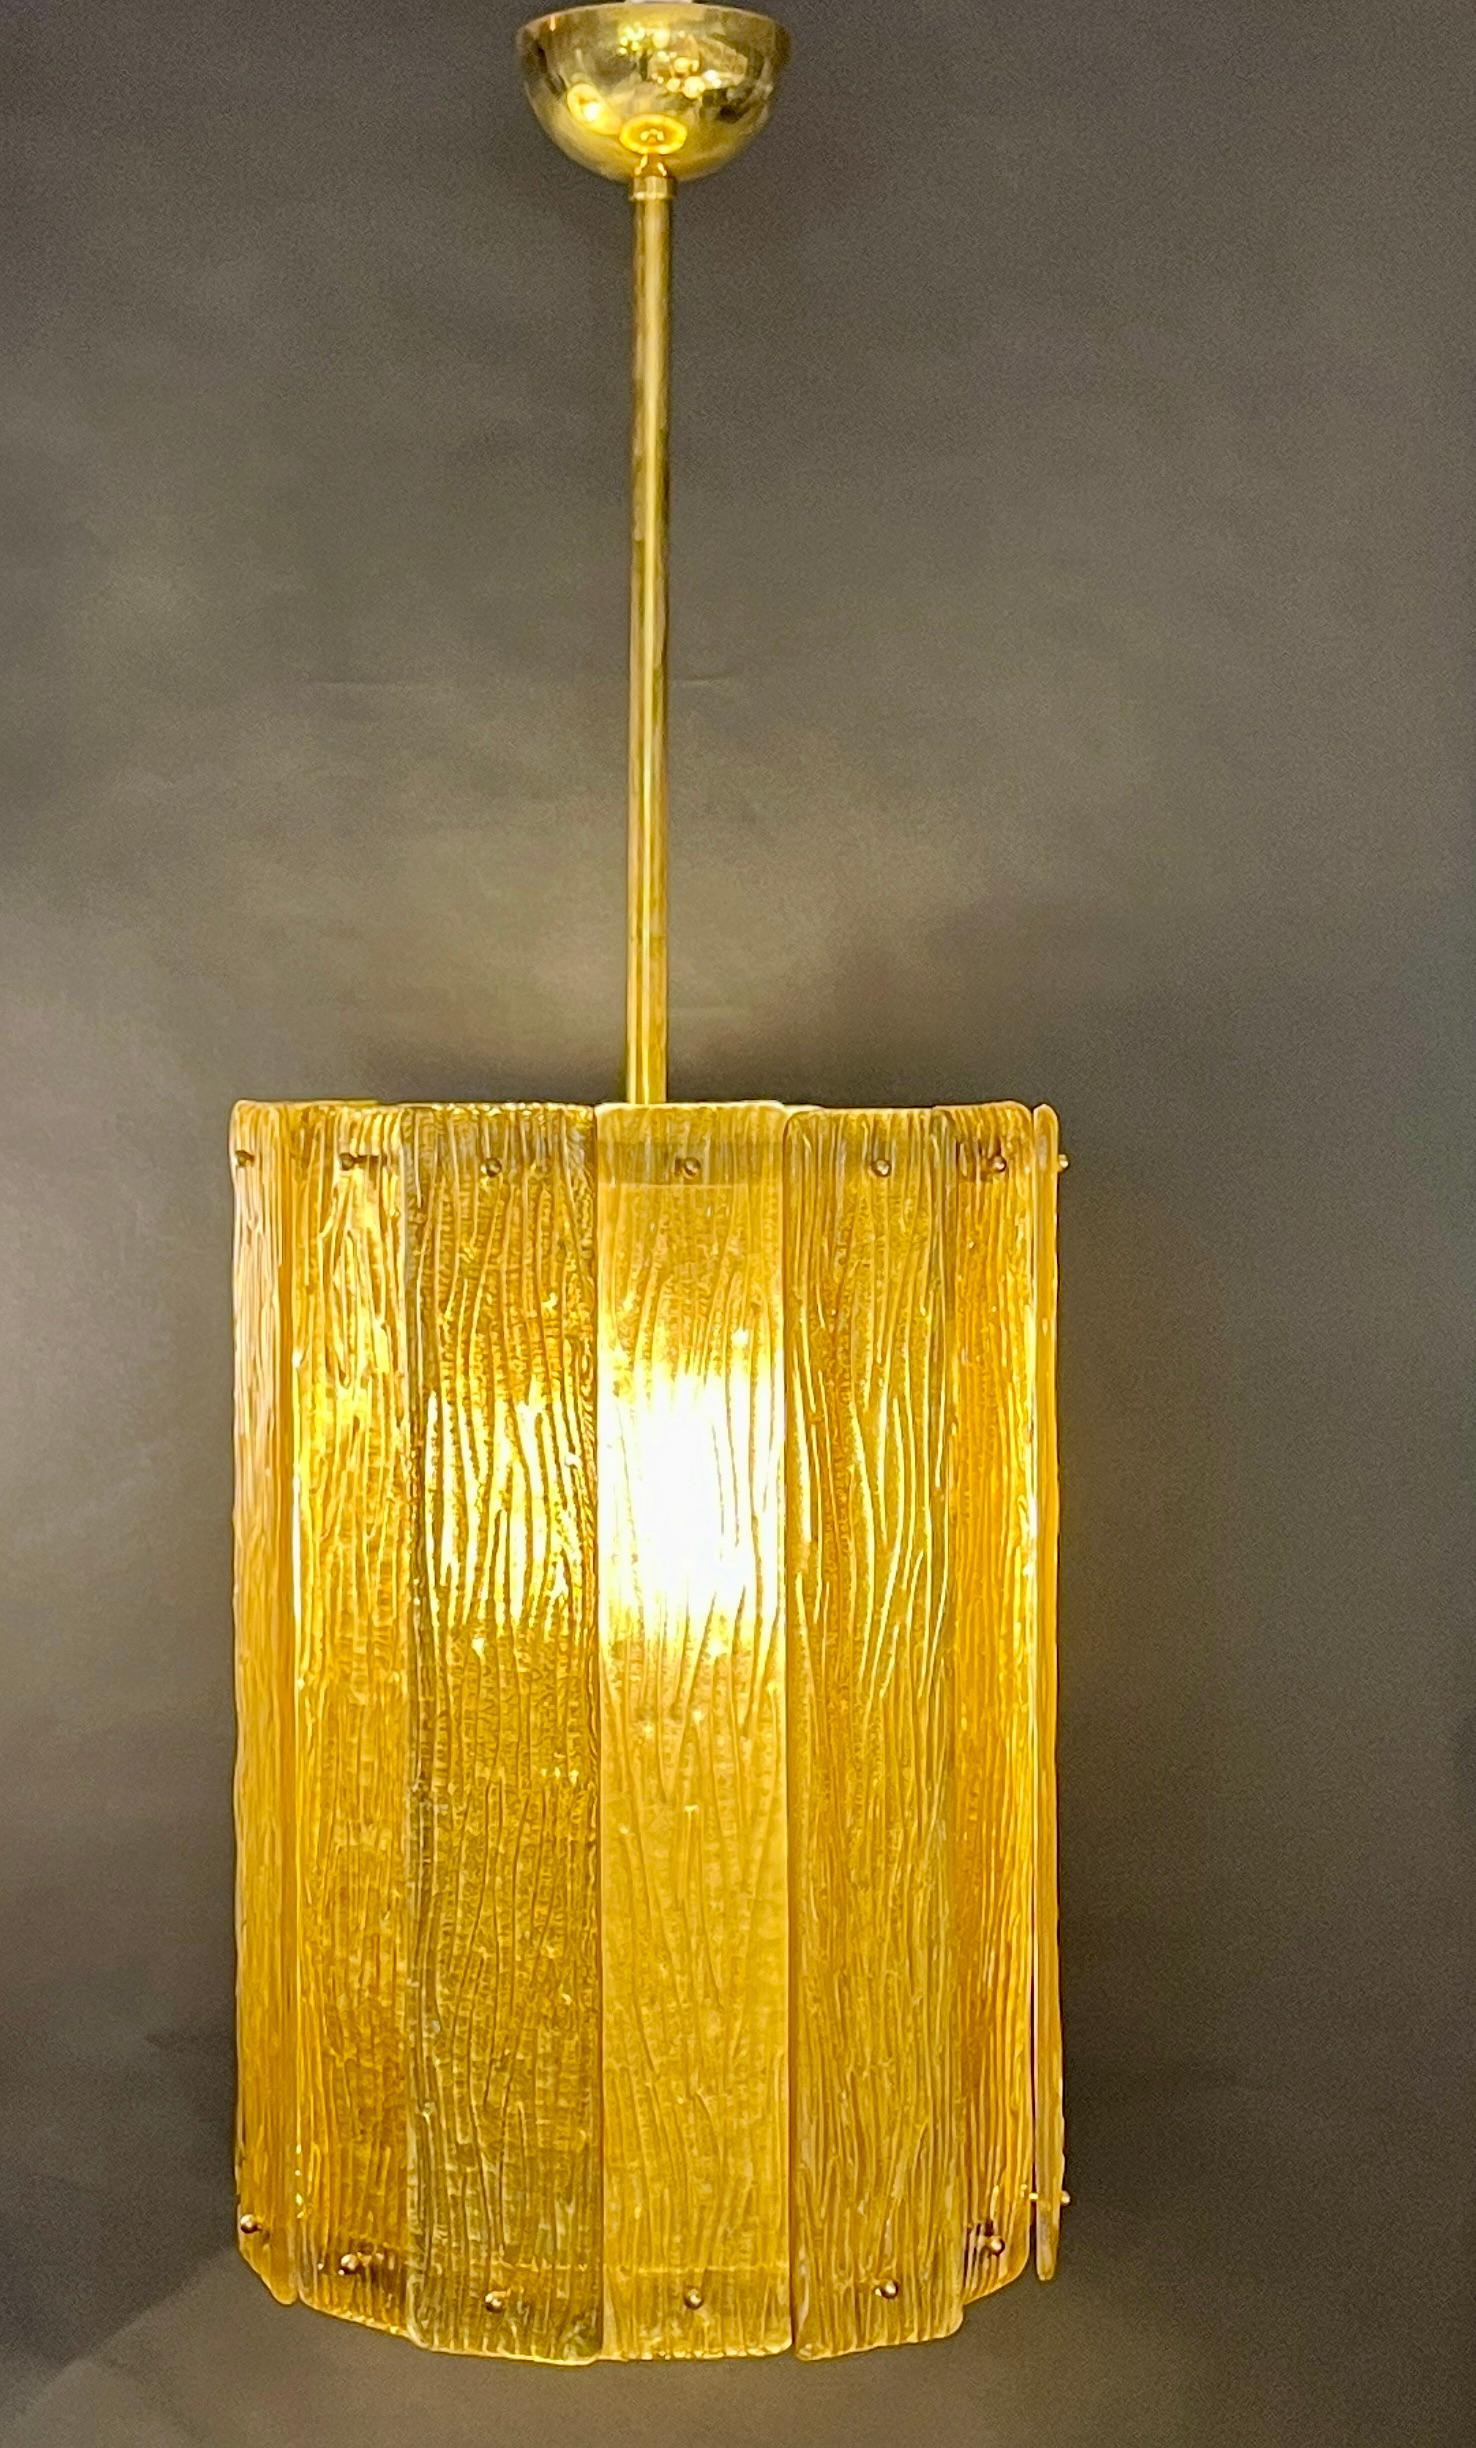 Einzigartiger, runder Pendelleuchter im italienischen Art-Déco-Design, vollständig handgefertigt. Diese Leuchte besteht aus einer handgefertigten Messingstruktur, die goldfarbene, strukturierte, sich überlappende Murano-Glasbänder trägt. Das